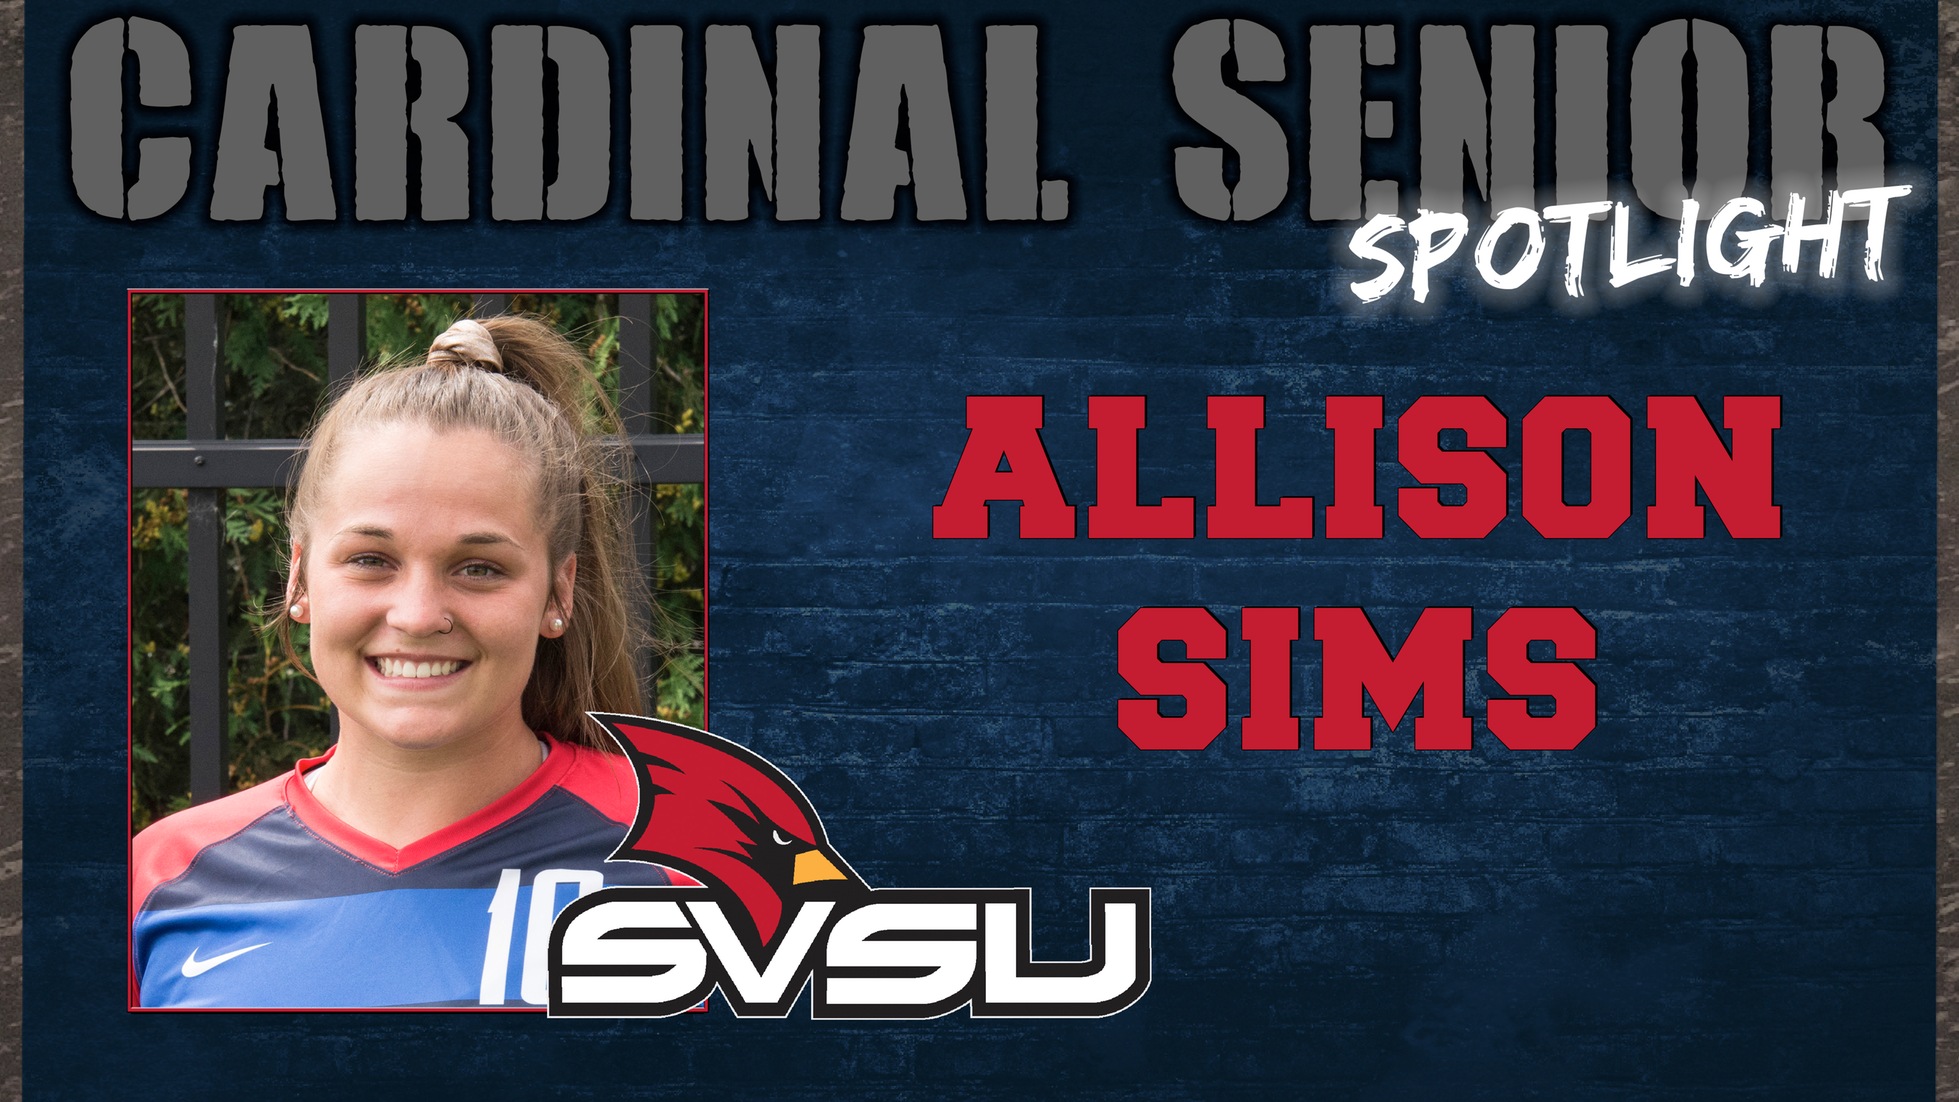 SVSU Cardinal Senior Spotlight - Allison Sims